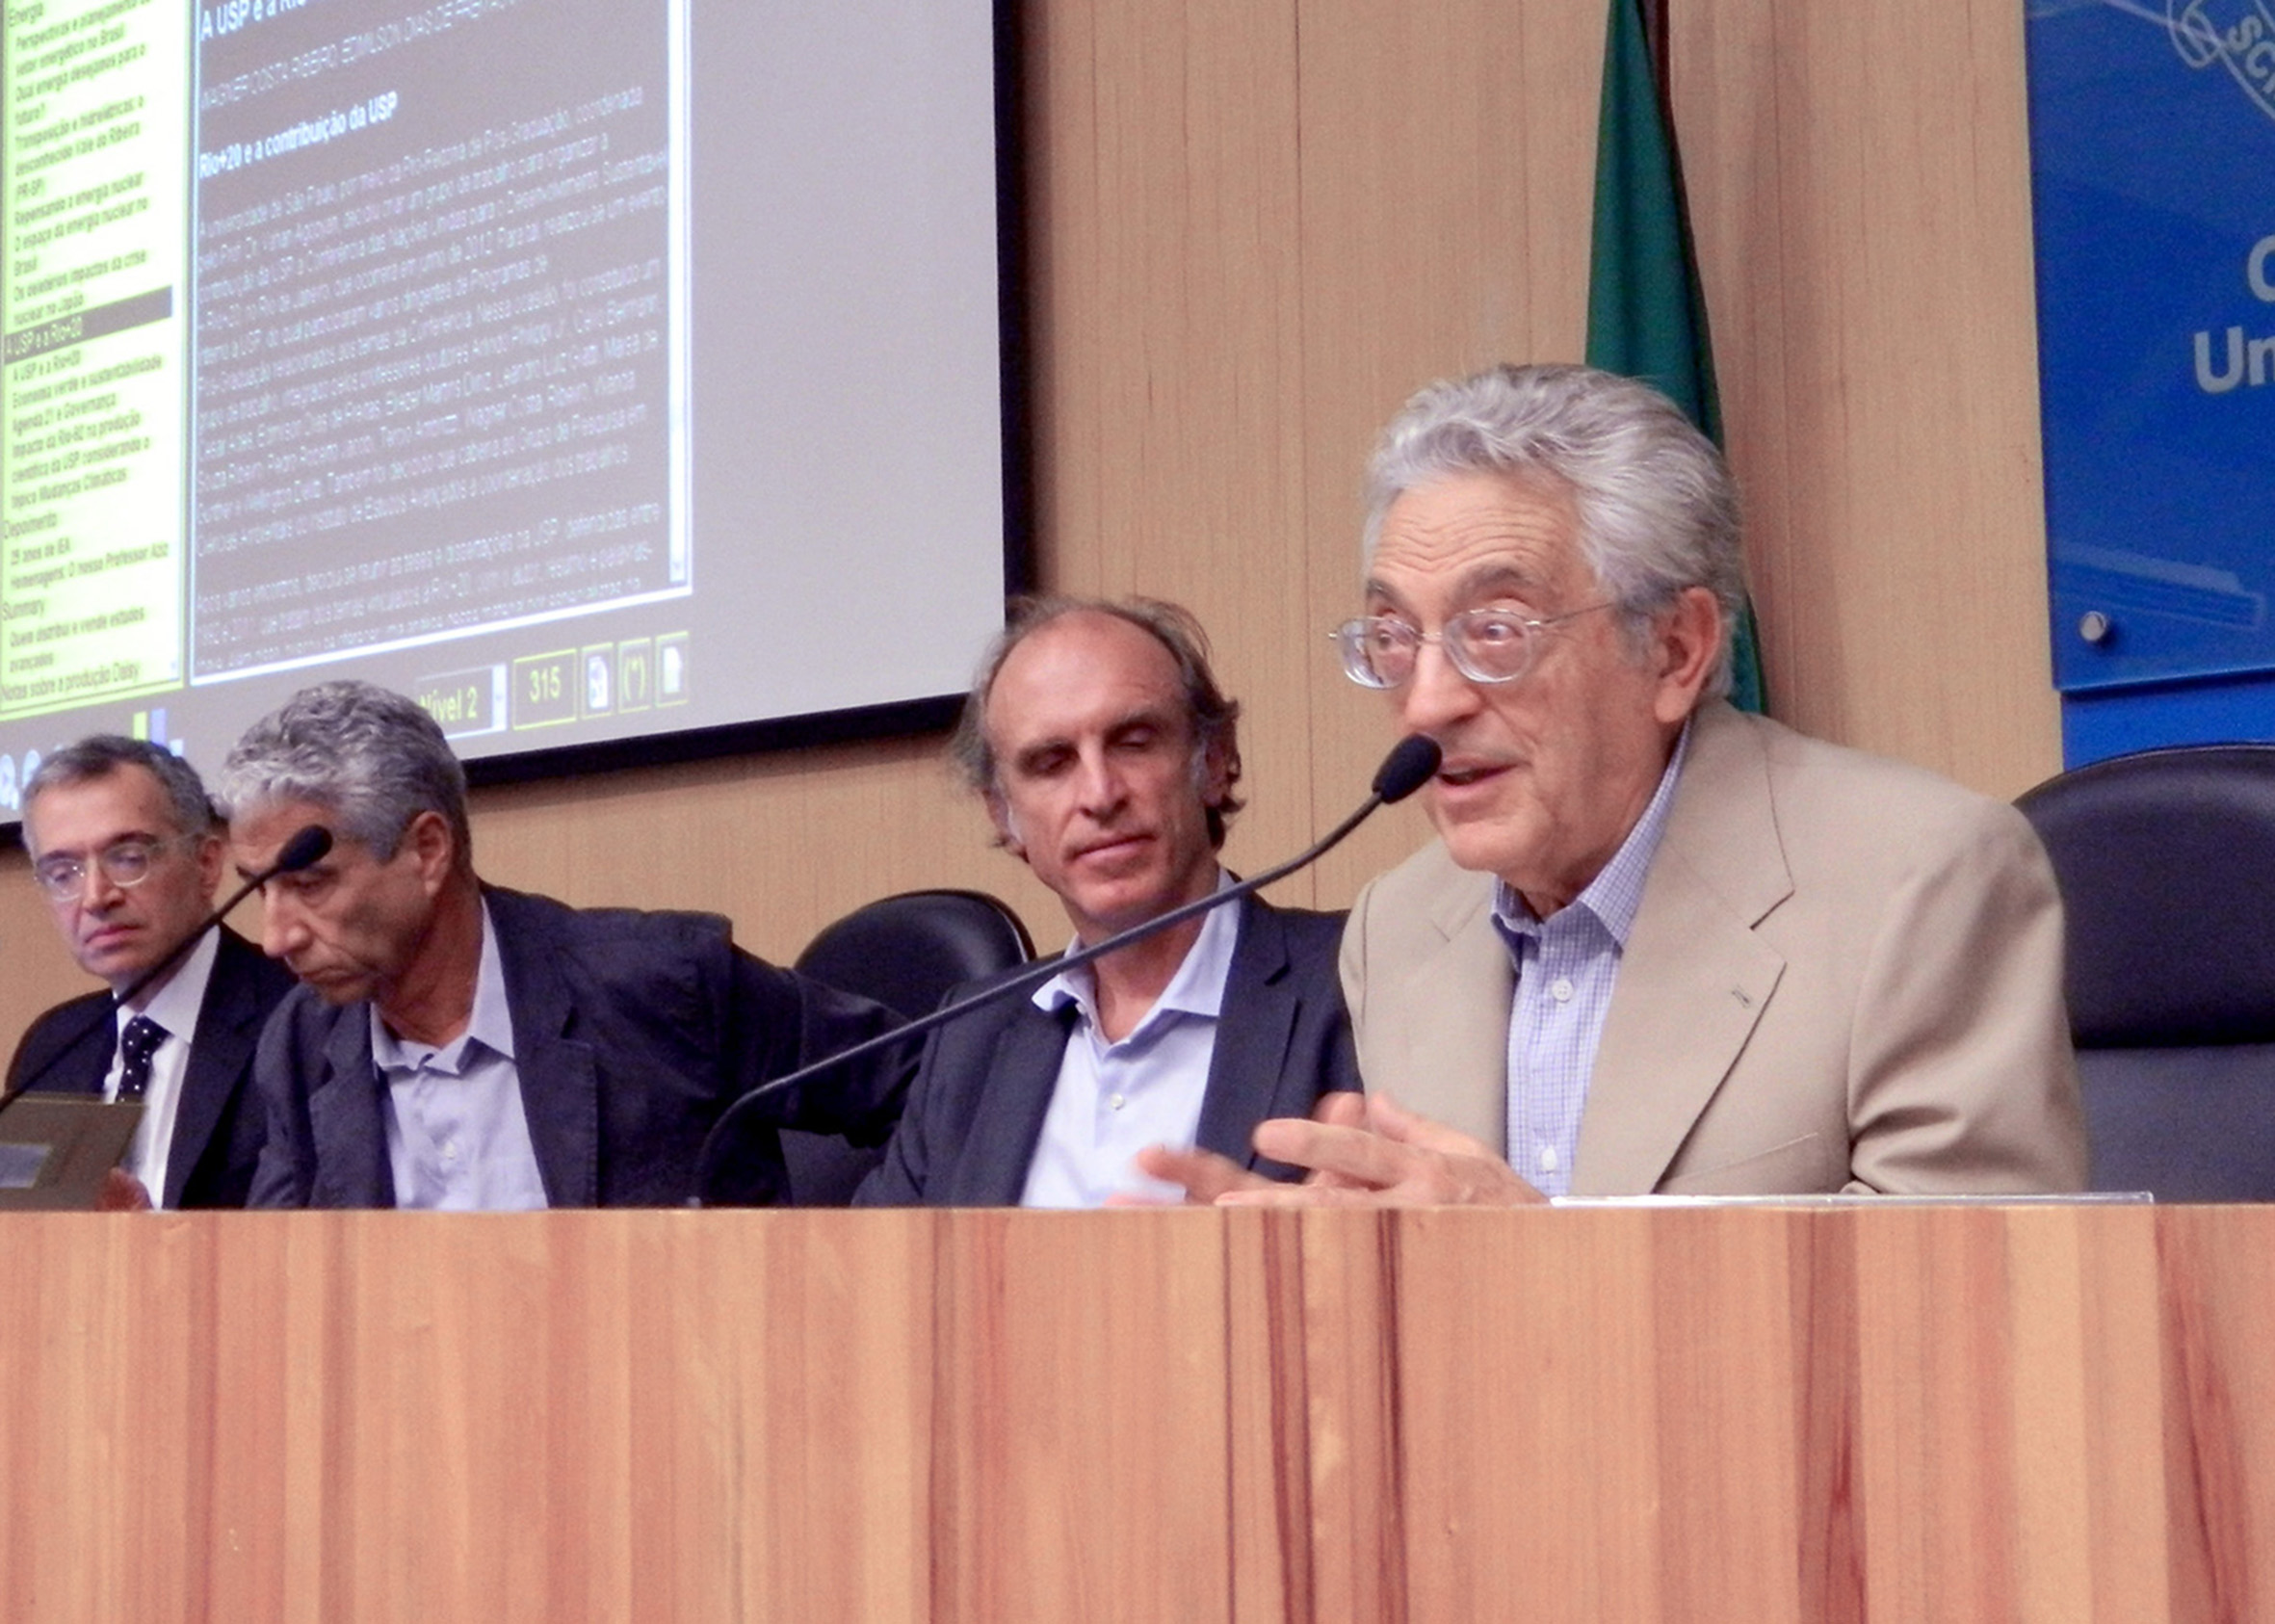 Eliezer Diniz, José Eli da Veiga, Martin Grossmann e Alfredo Bosi